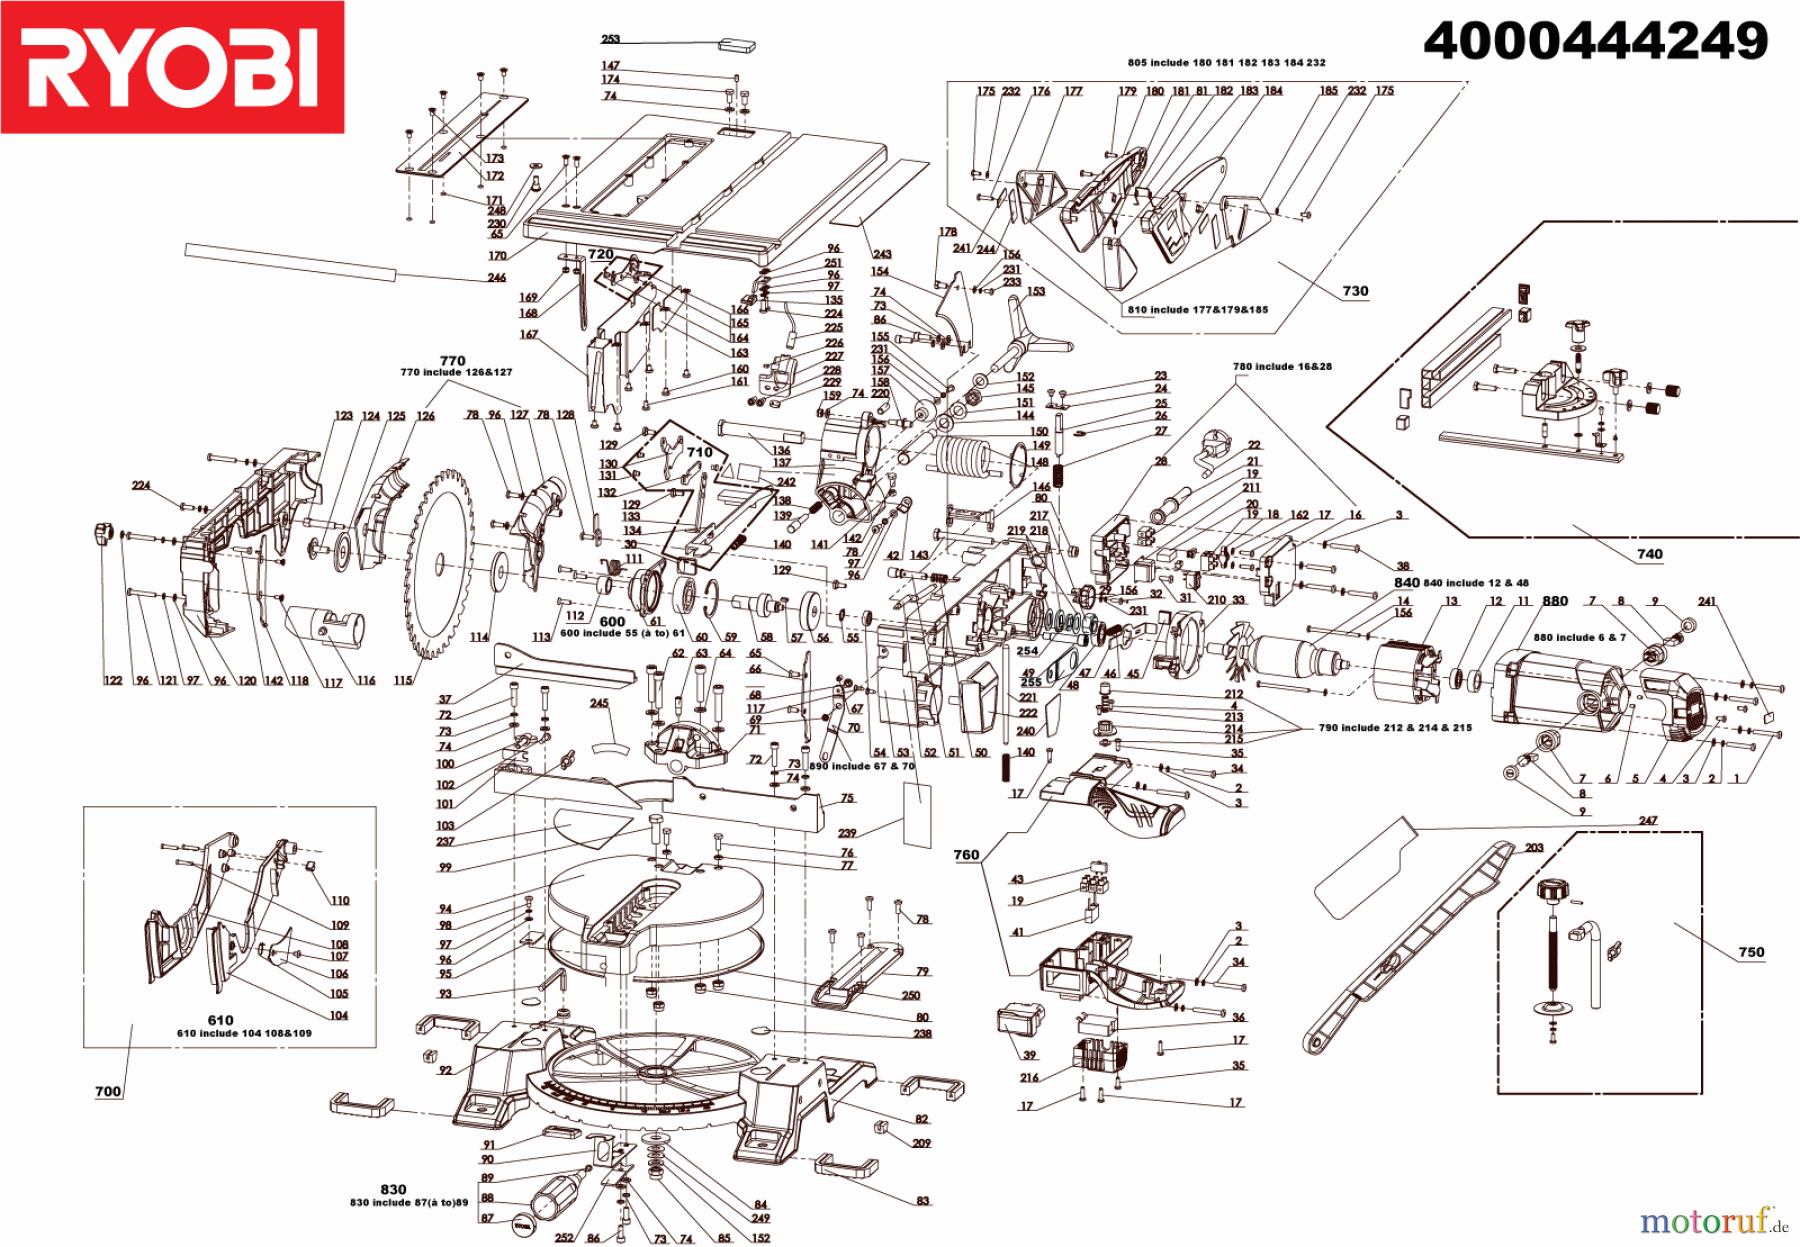  Ryobi Sägen Kapp- und Gehrungssägen RTMS1800-G 1800 W Kapp-, Gehrungs- und Tischkreissäge